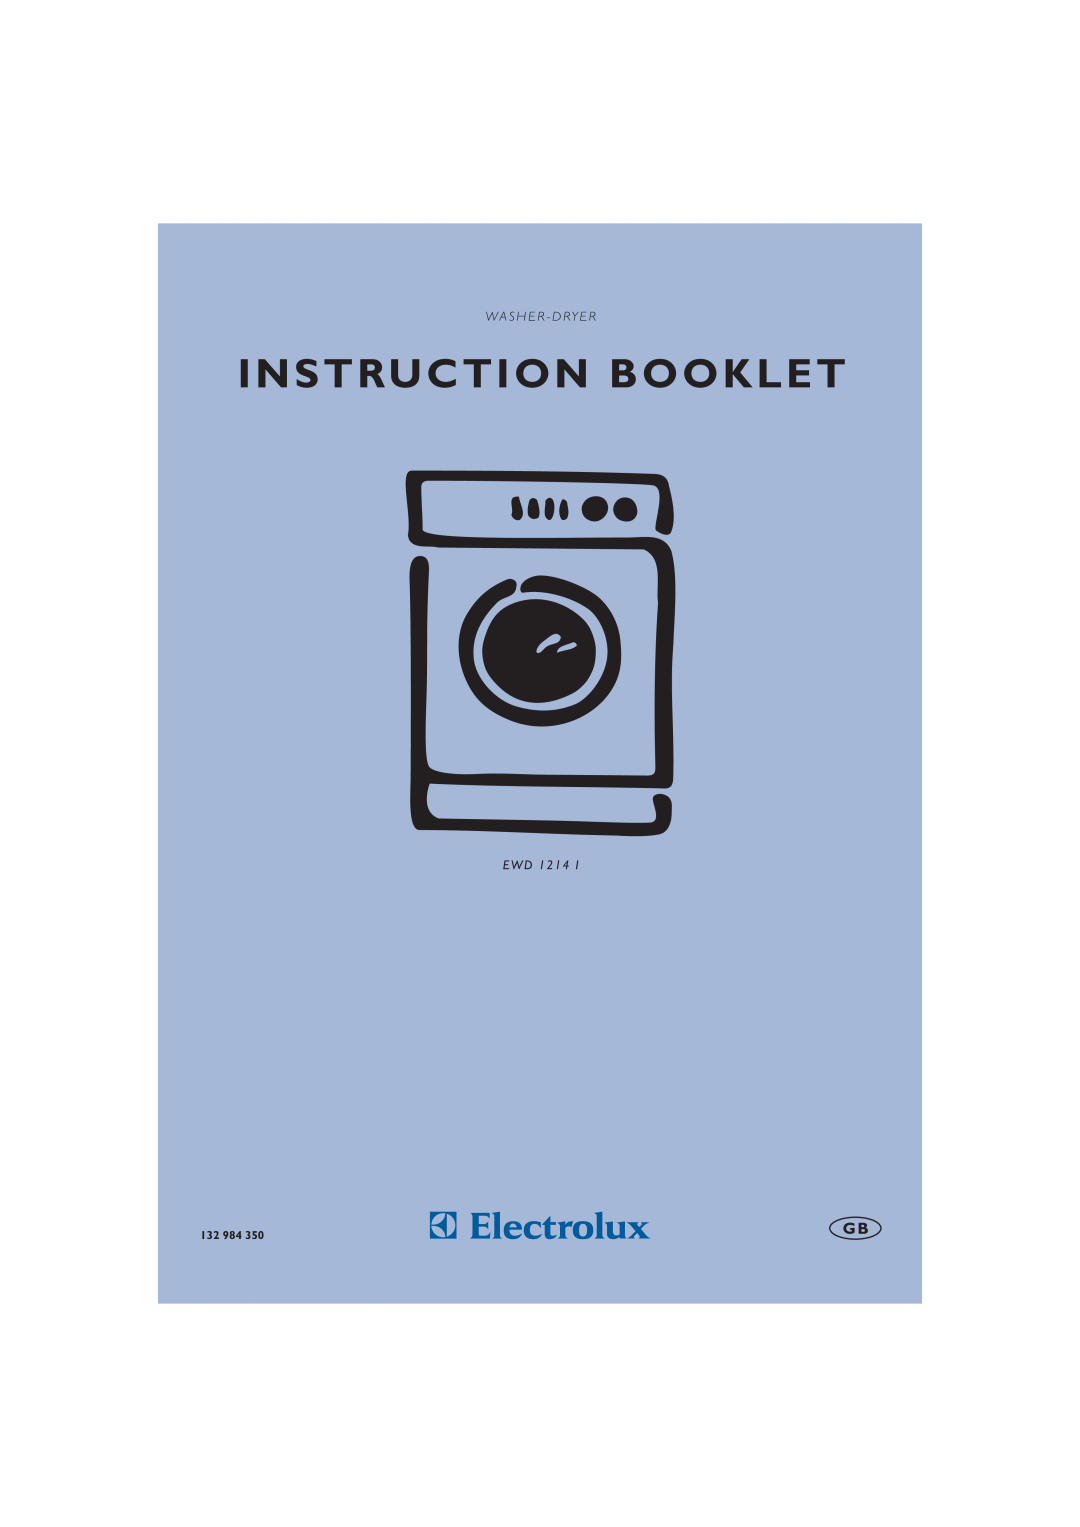 Electrolux EWD 1214 I manual Instruction Booklet, W A S H E R - D Ry E R, 132 984 